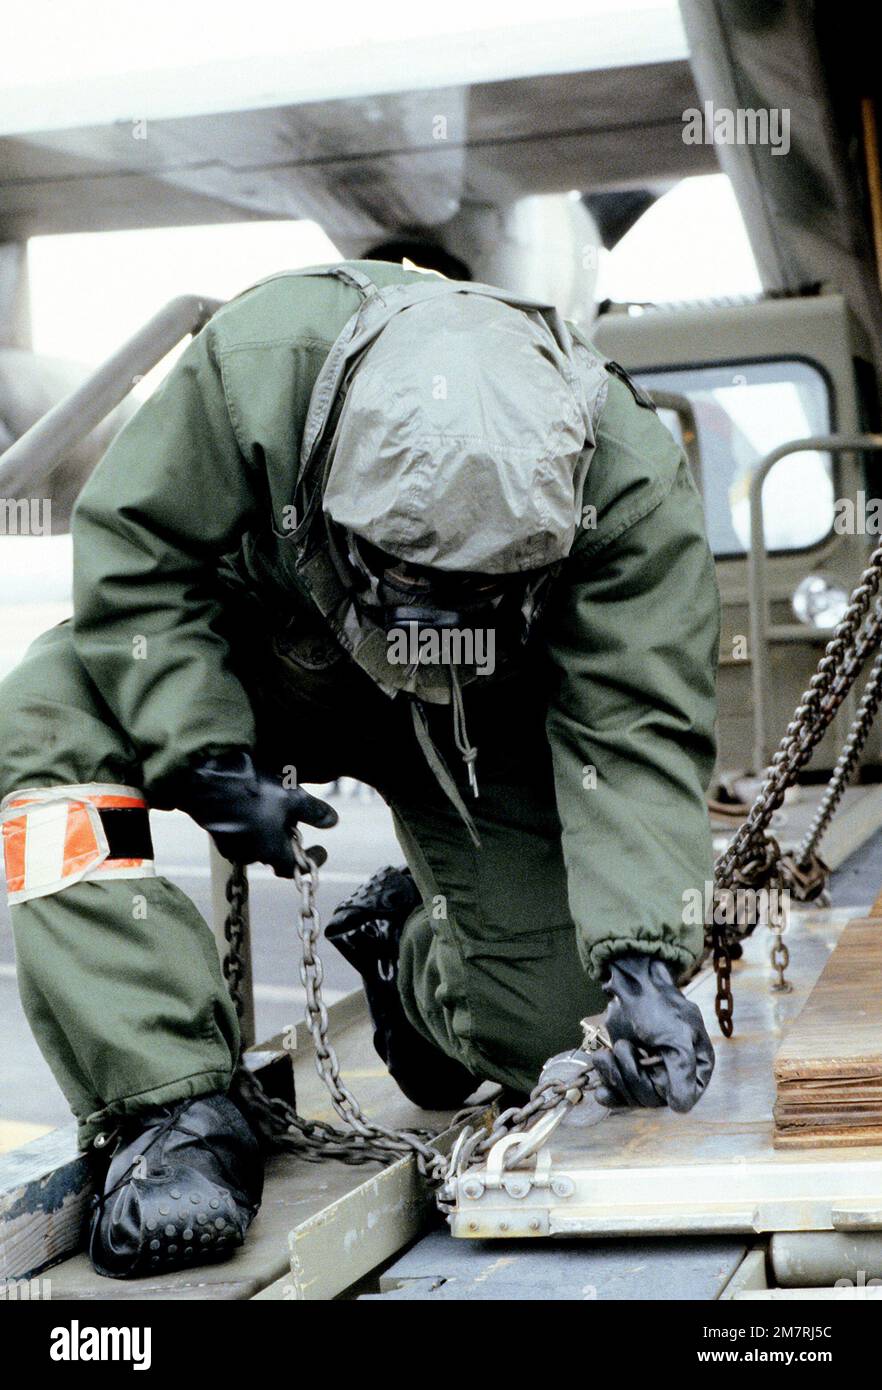 Un aviateur portant des vêtements de protection sécurise une palette avec des chaînes avant de la charger à bord d'un avion C-130 Hercules. L'aviateur est de l'aile du transport aérien militaire de 317th, Garde nationale aérienne, impliqué dans un exercice de guerre chimique. Base: Rickenbacker Ang État de base: Ohio (OH) pays: États-Unis d'Amérique (USA) Banque D'Images